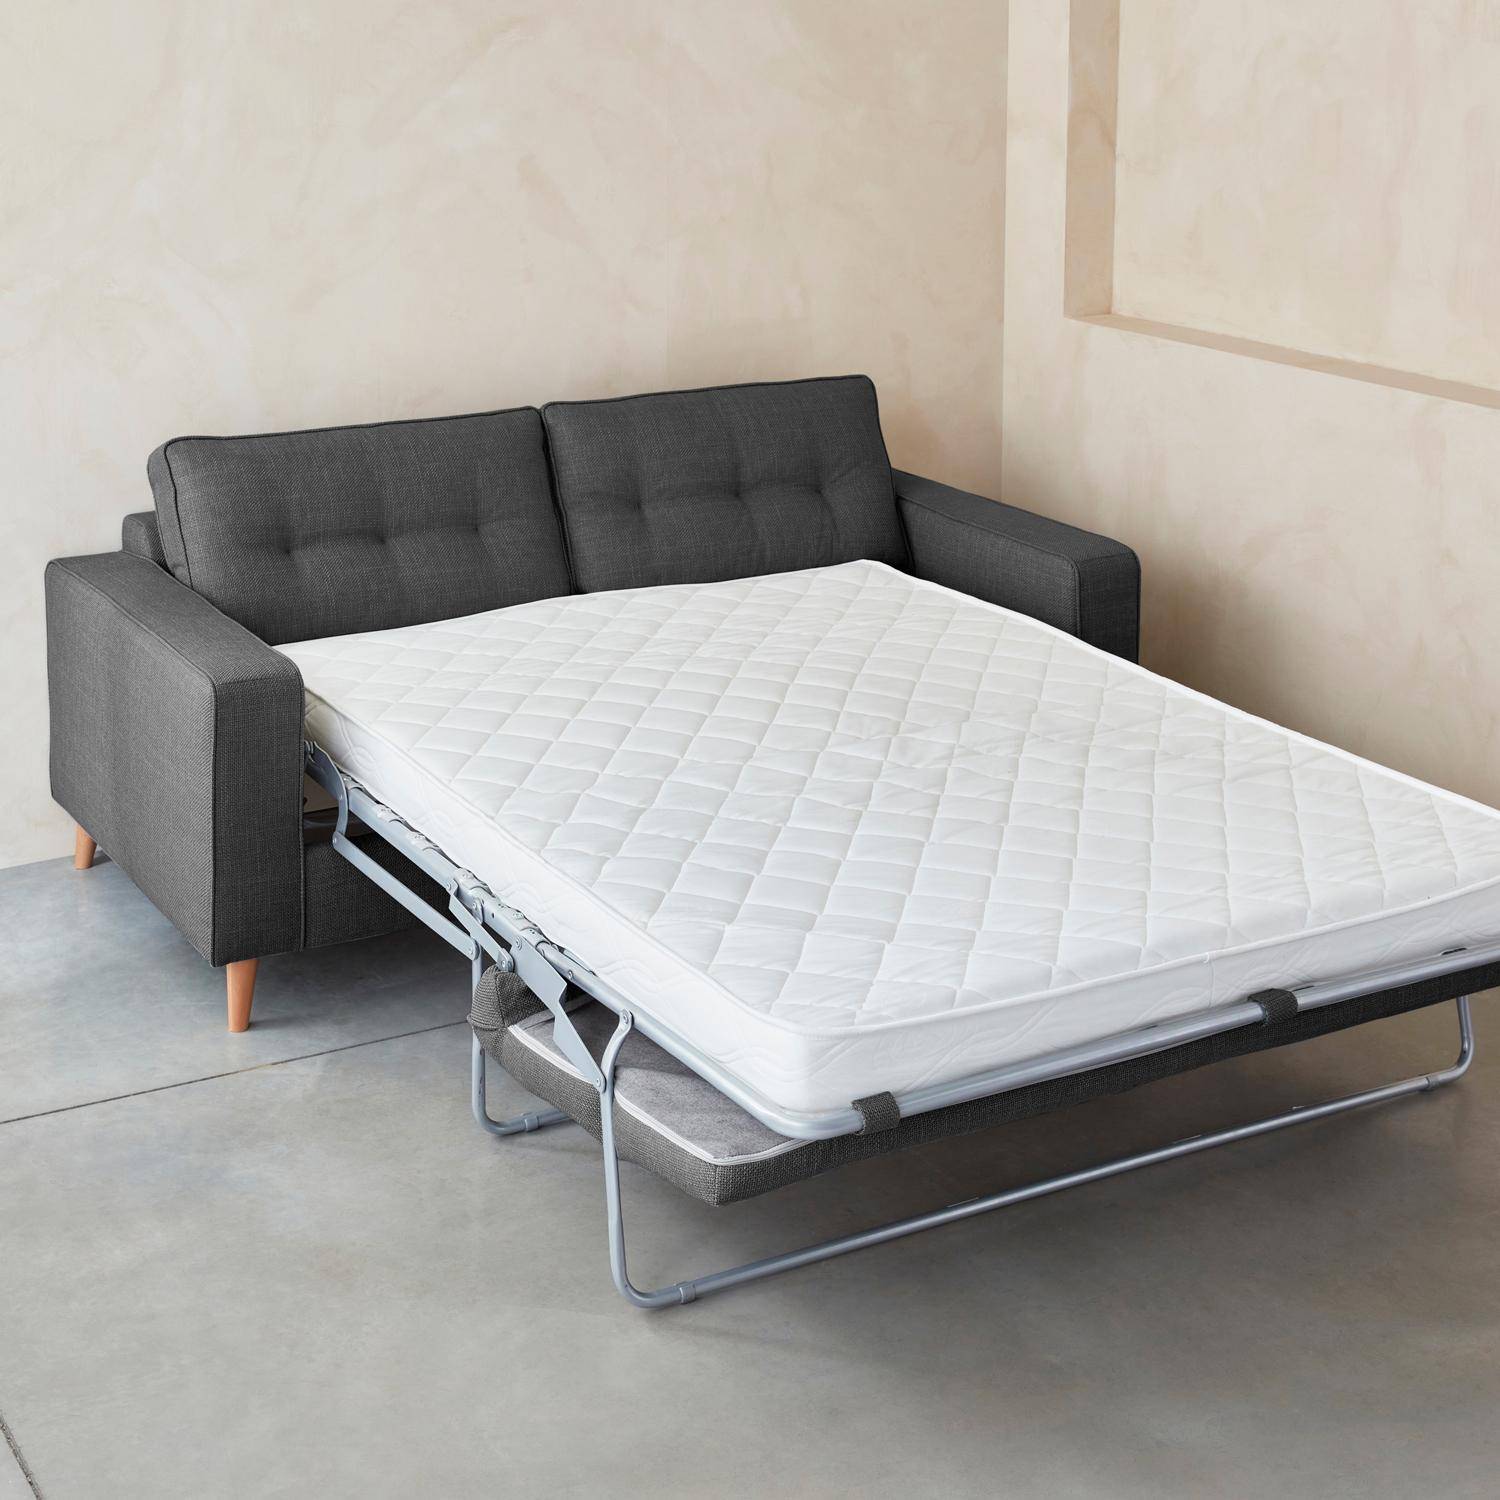 3-zits slaapbank in antracietkleur met 12 cm dik matras, gemaakt in Frankrijk Photo3